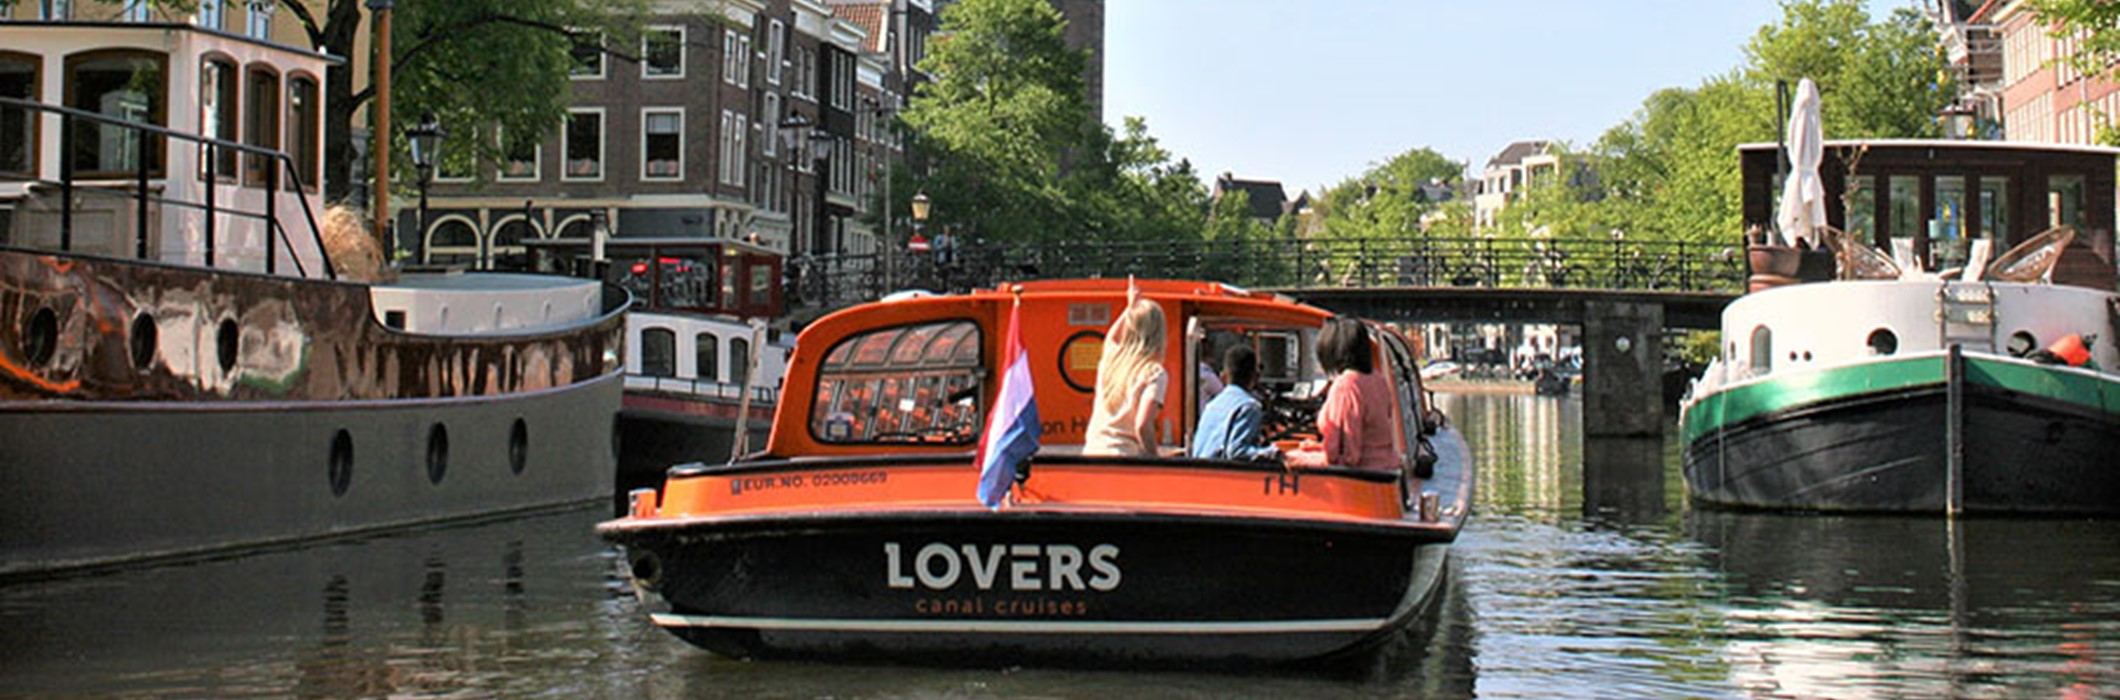 1 h. Croisière Amsterdam Canal Jour (Départ près de la maison d'Anne Frank)